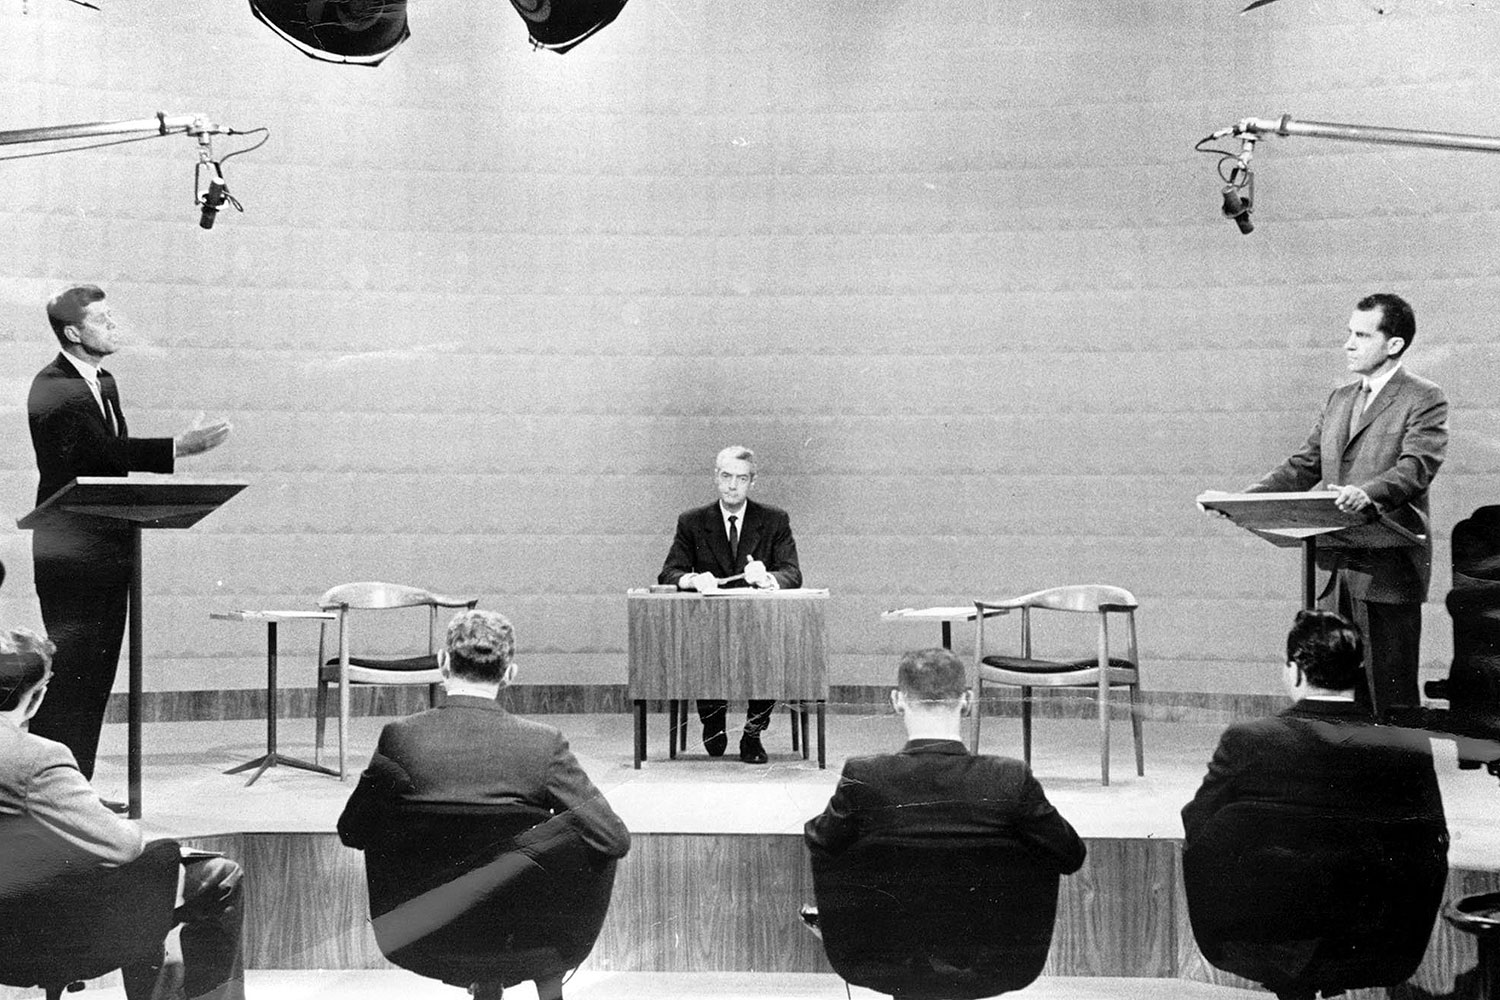 1960 presidential debate